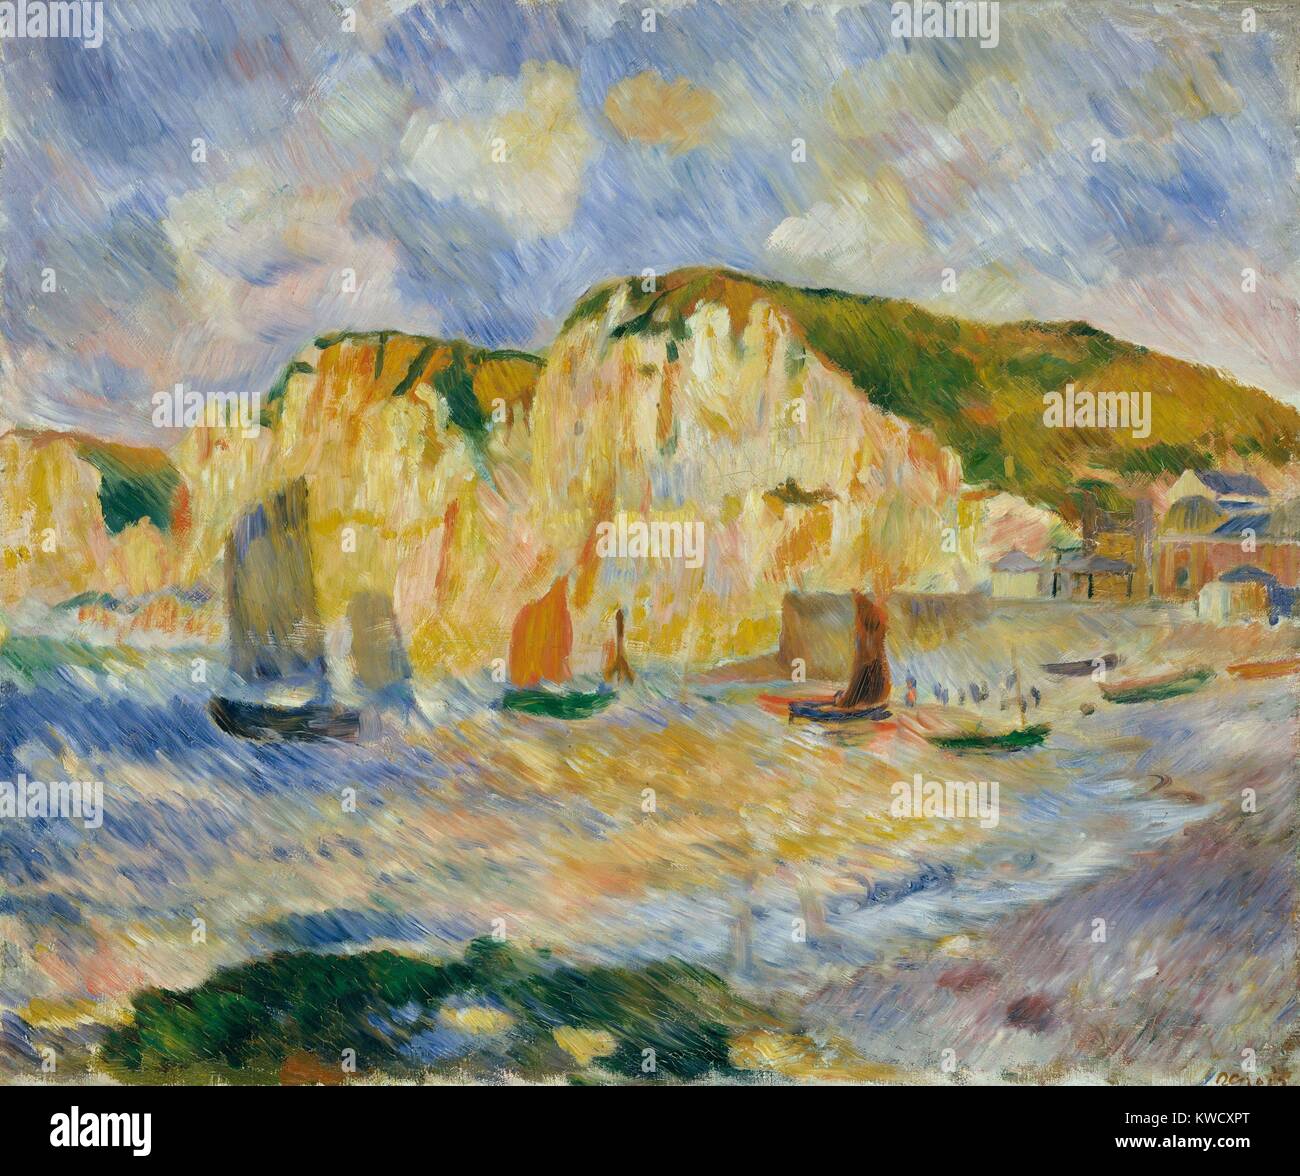 Mer et falaises, par Auguste Renoir, 1885, la peinture impressionniste français, huile sur toile. Renoir a peint ce paysage avec de forts coups de pinceau (BSLOC tout droit éclos 2017 3 90) Banque D'Images